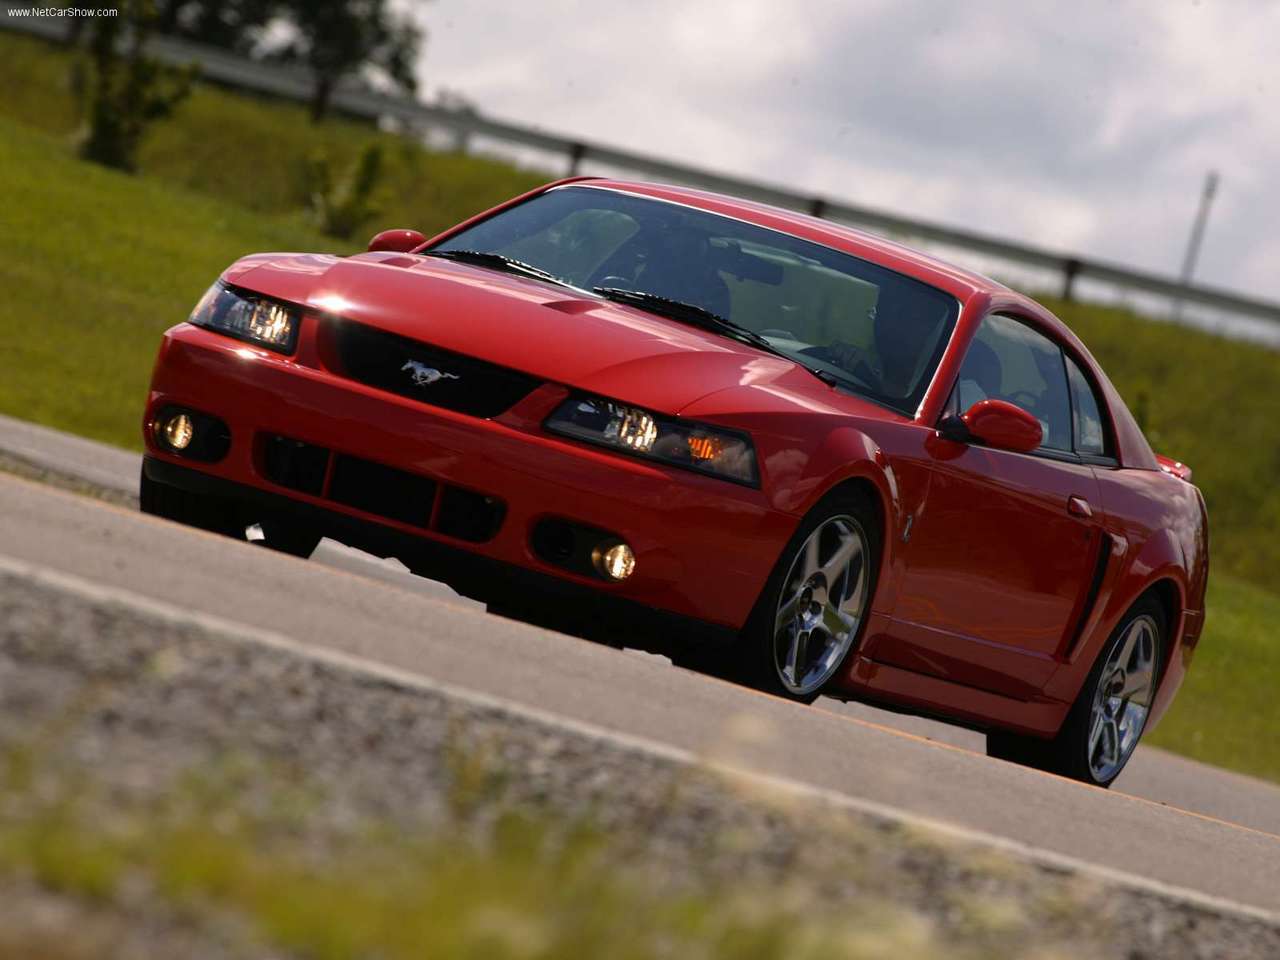 2003 Mustang Terminator Value